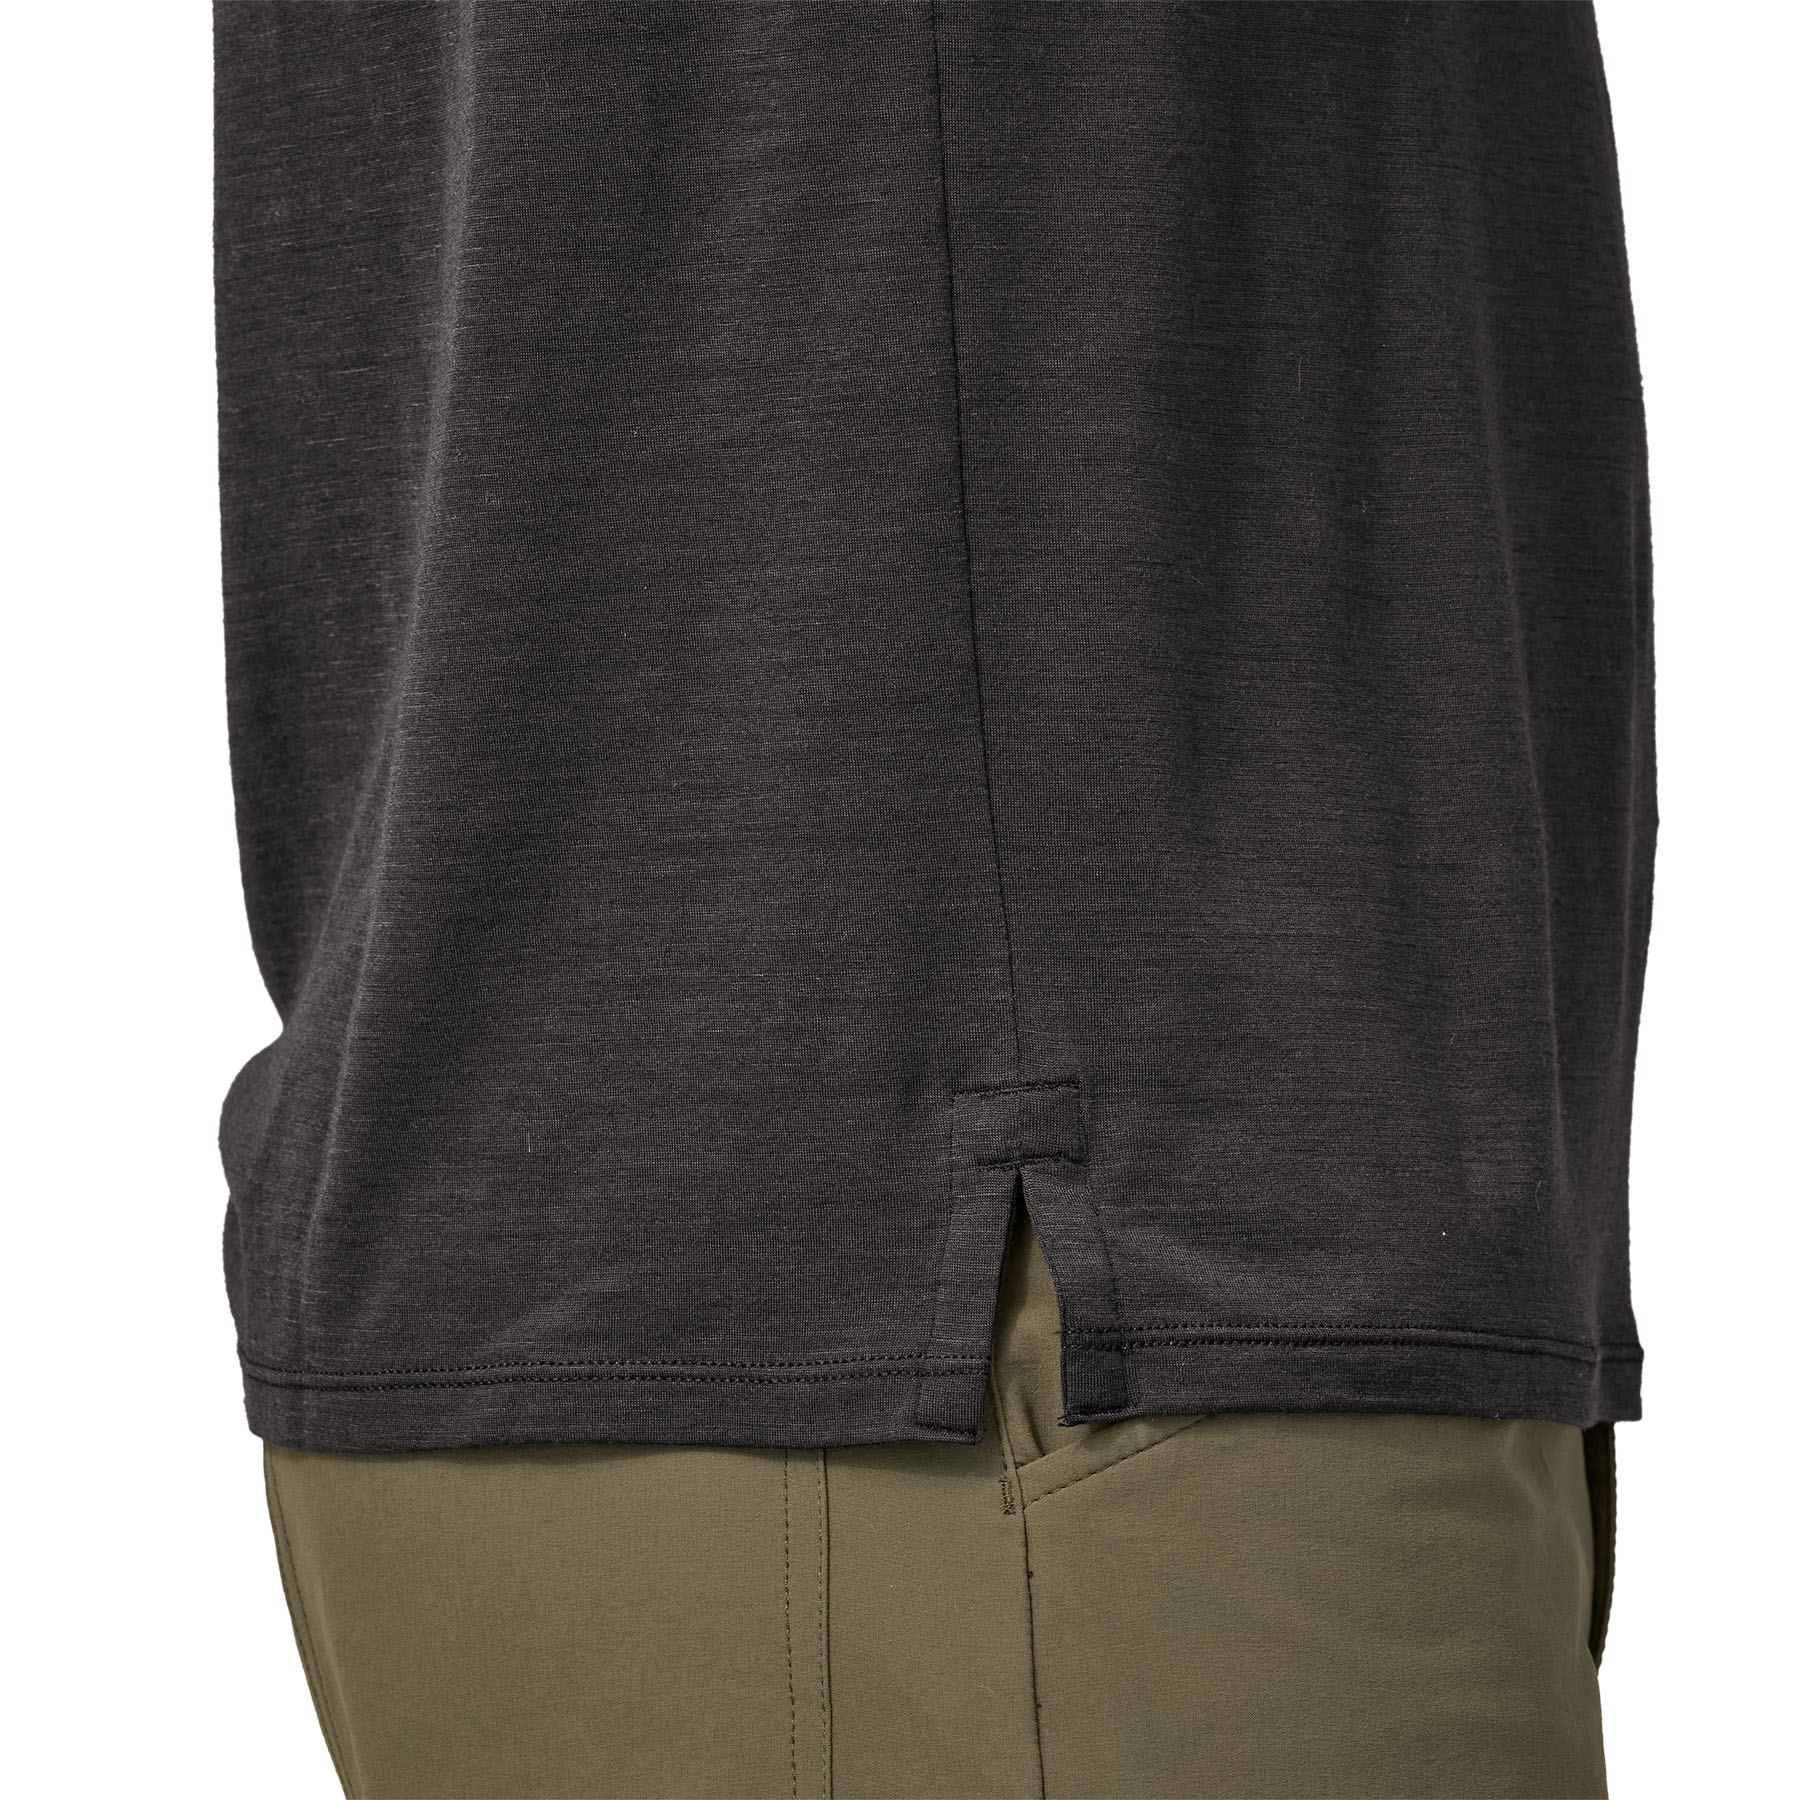 PATAGONIA Men's Long-Sleeved Capilene® Cool Merino Shirt Black